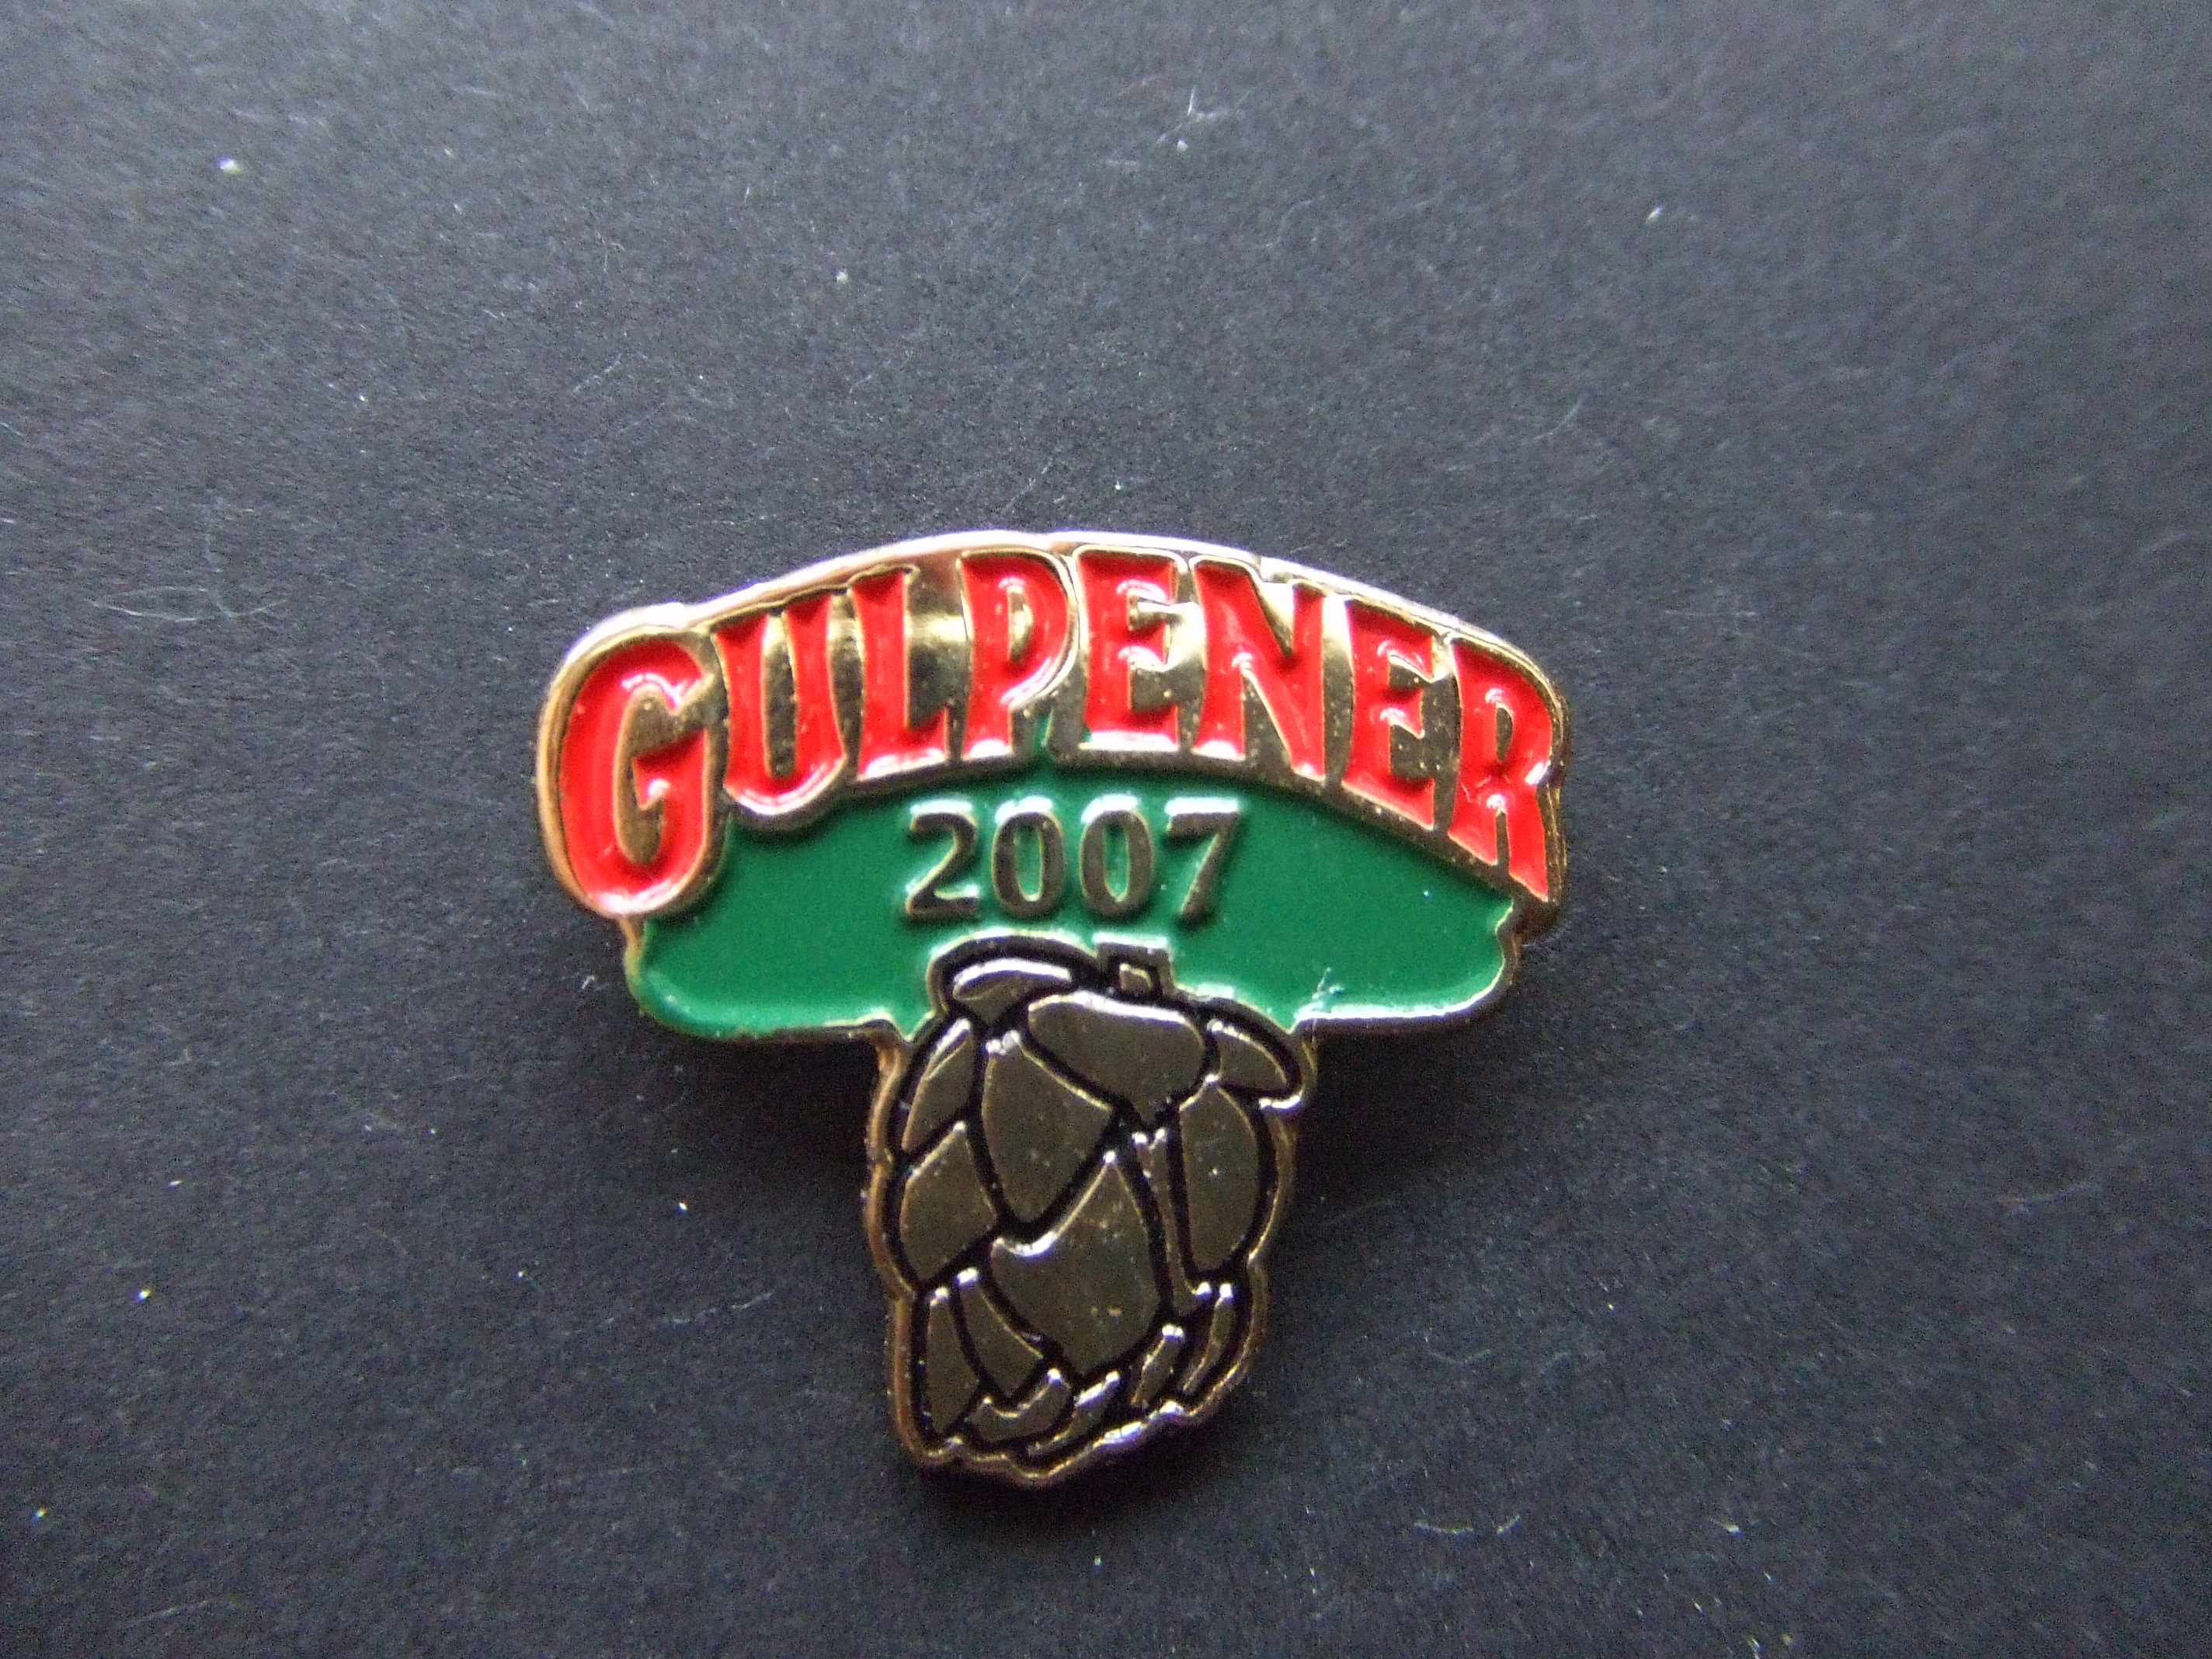 Gulpener bier 2007